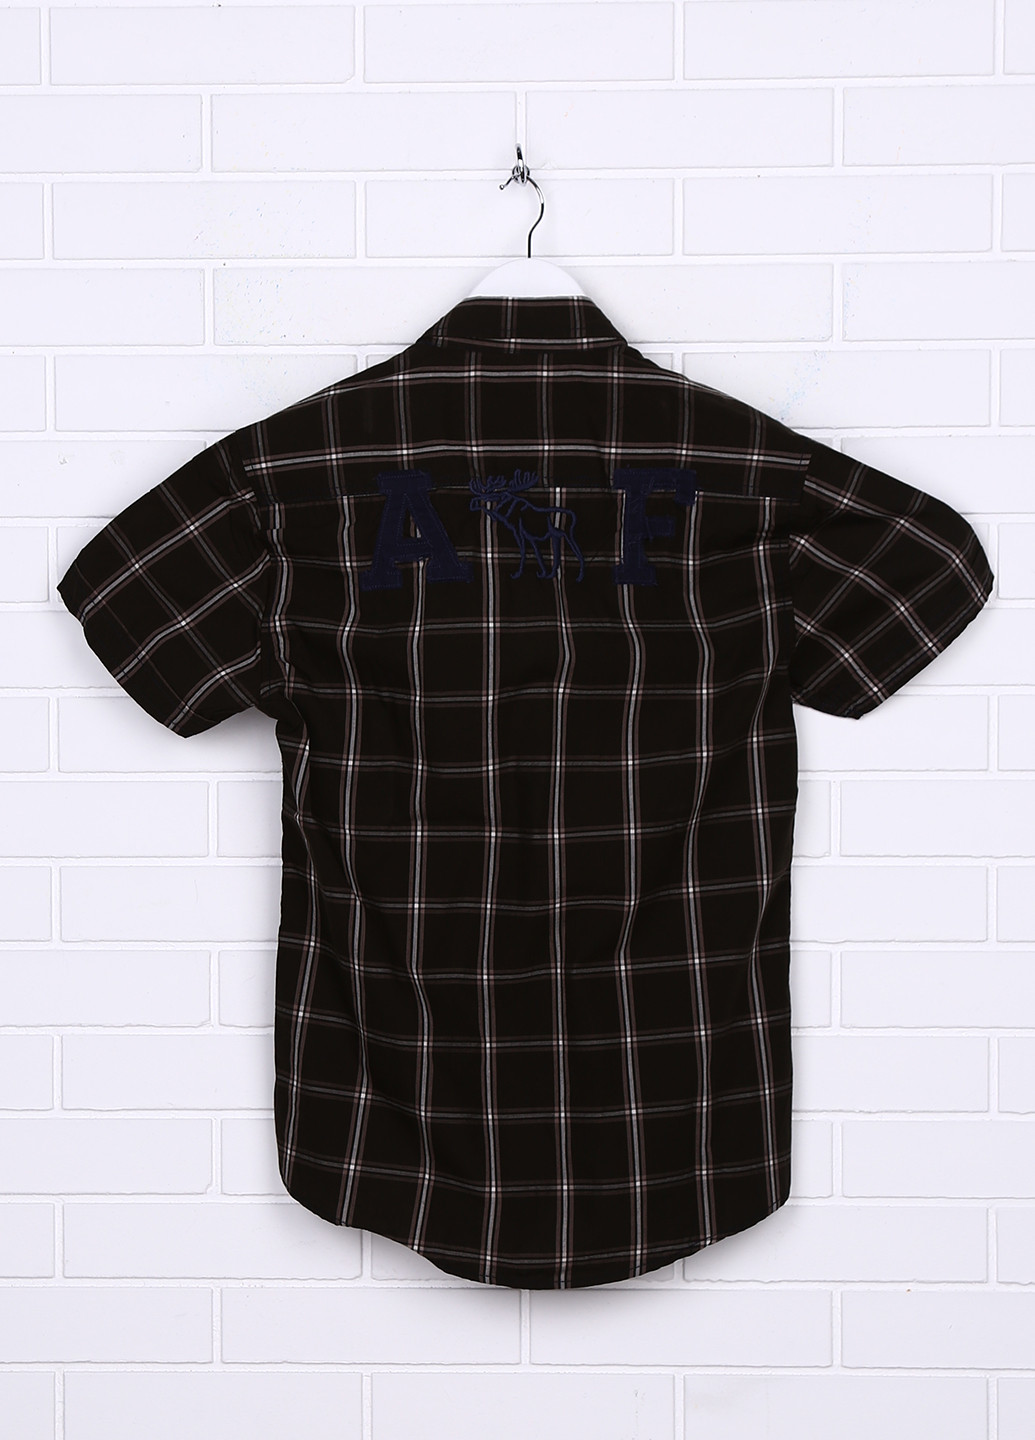 Оливковковая (хаки) кэжуал рубашка в клетку Abercrombie & Fitch с коротким рукавом